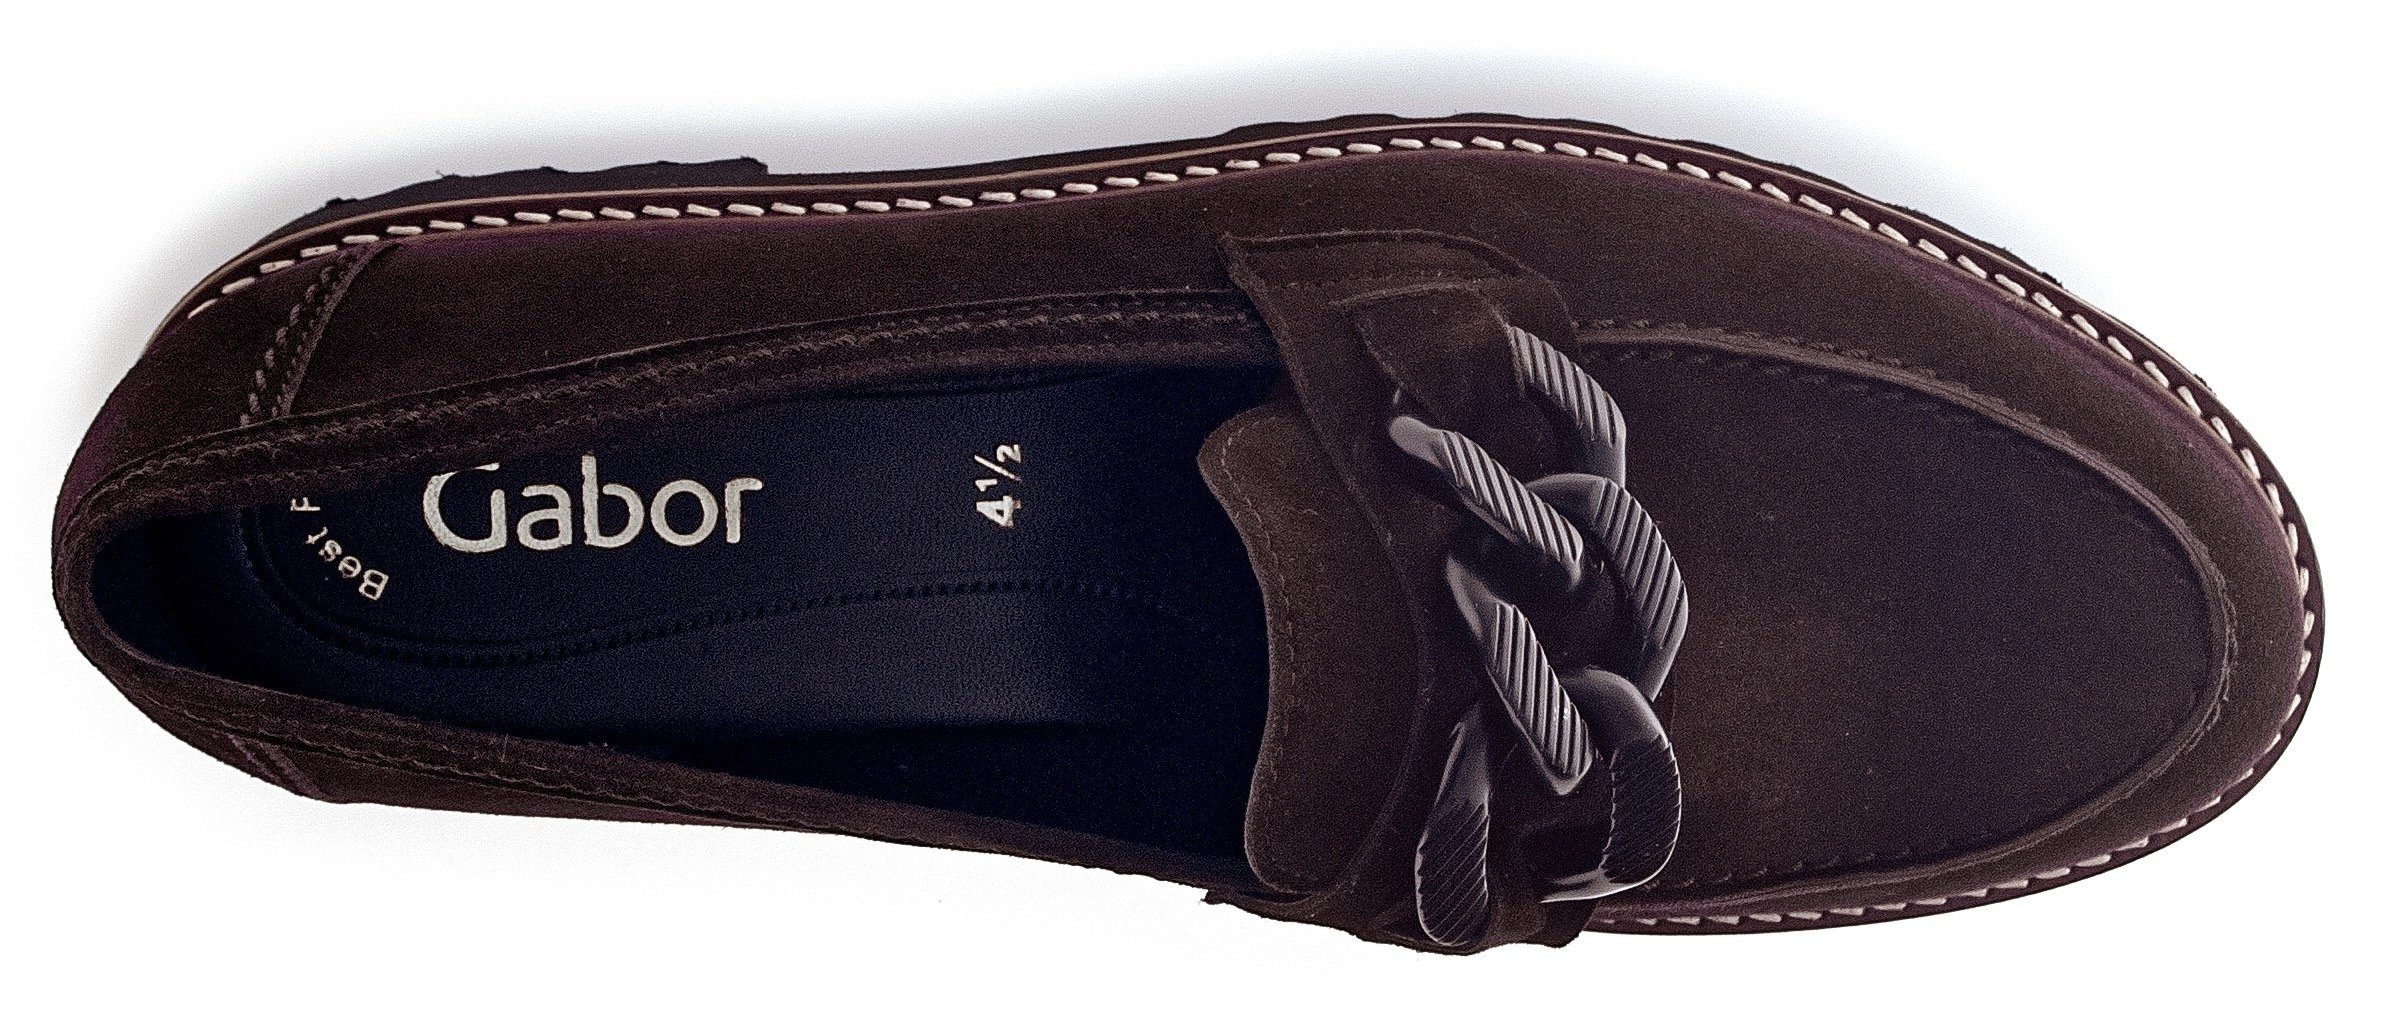 Gabor Slipper mit Best dunkelbraun-schwarz Fitting-Ausstattung